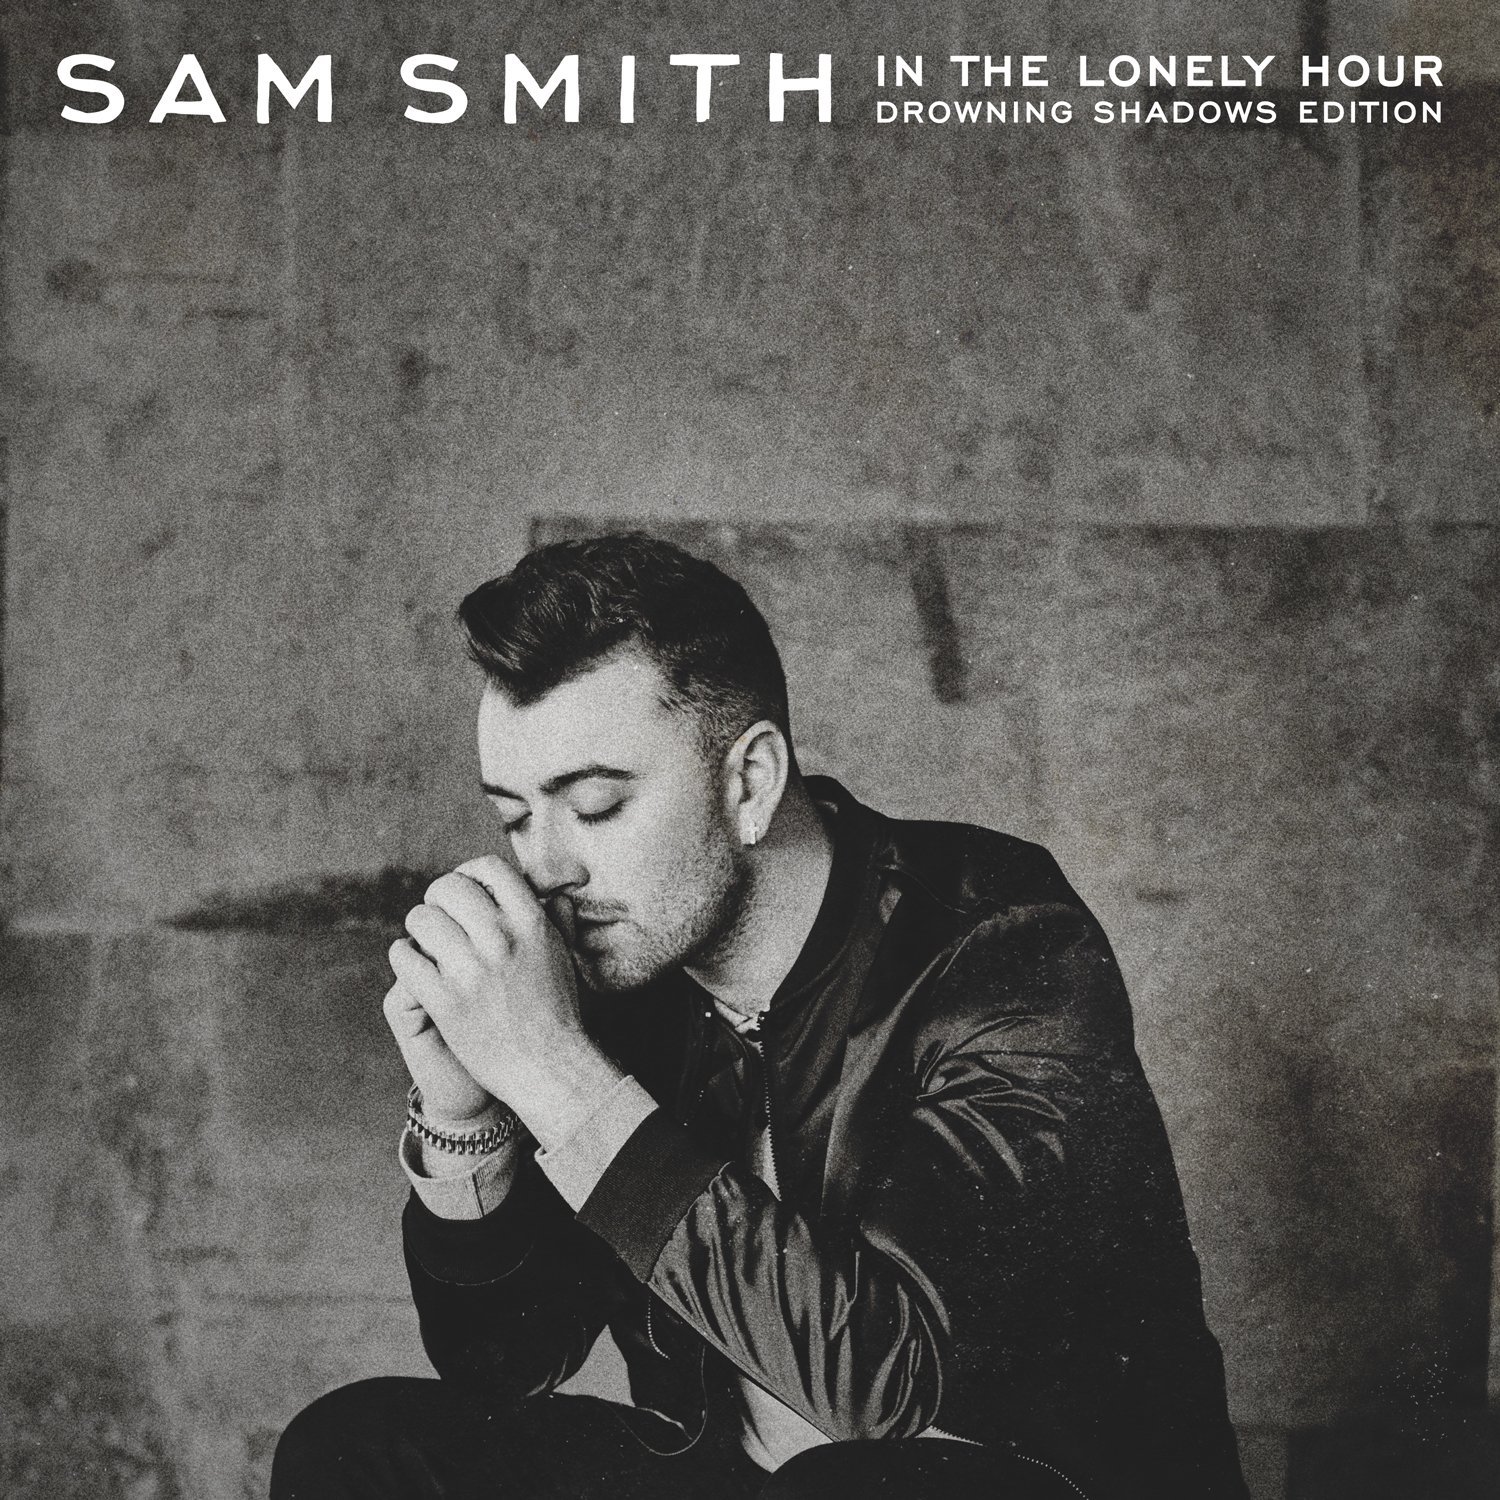 סם סמית In The Lonely Hour Drowning Edition